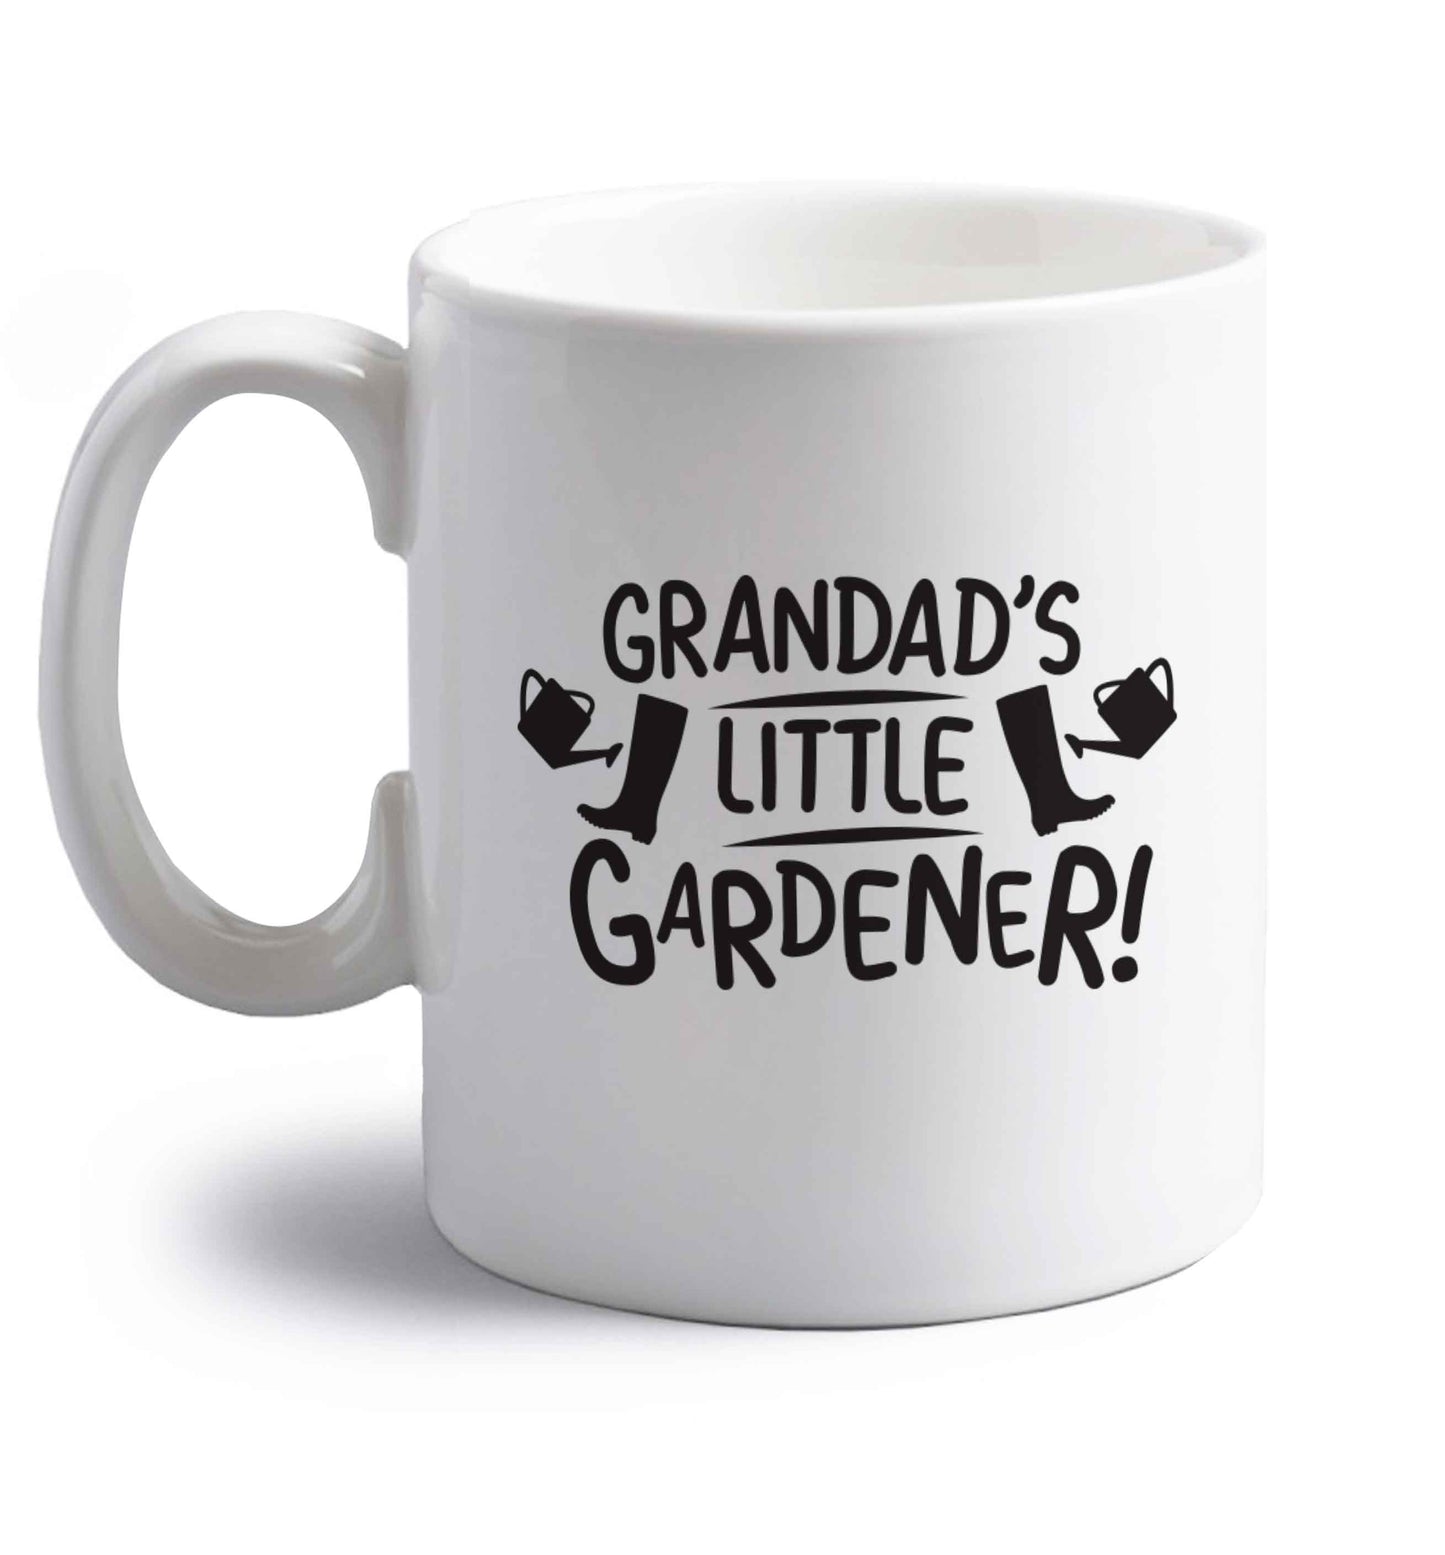 Grandad's little gardener right handed white ceramic mug 